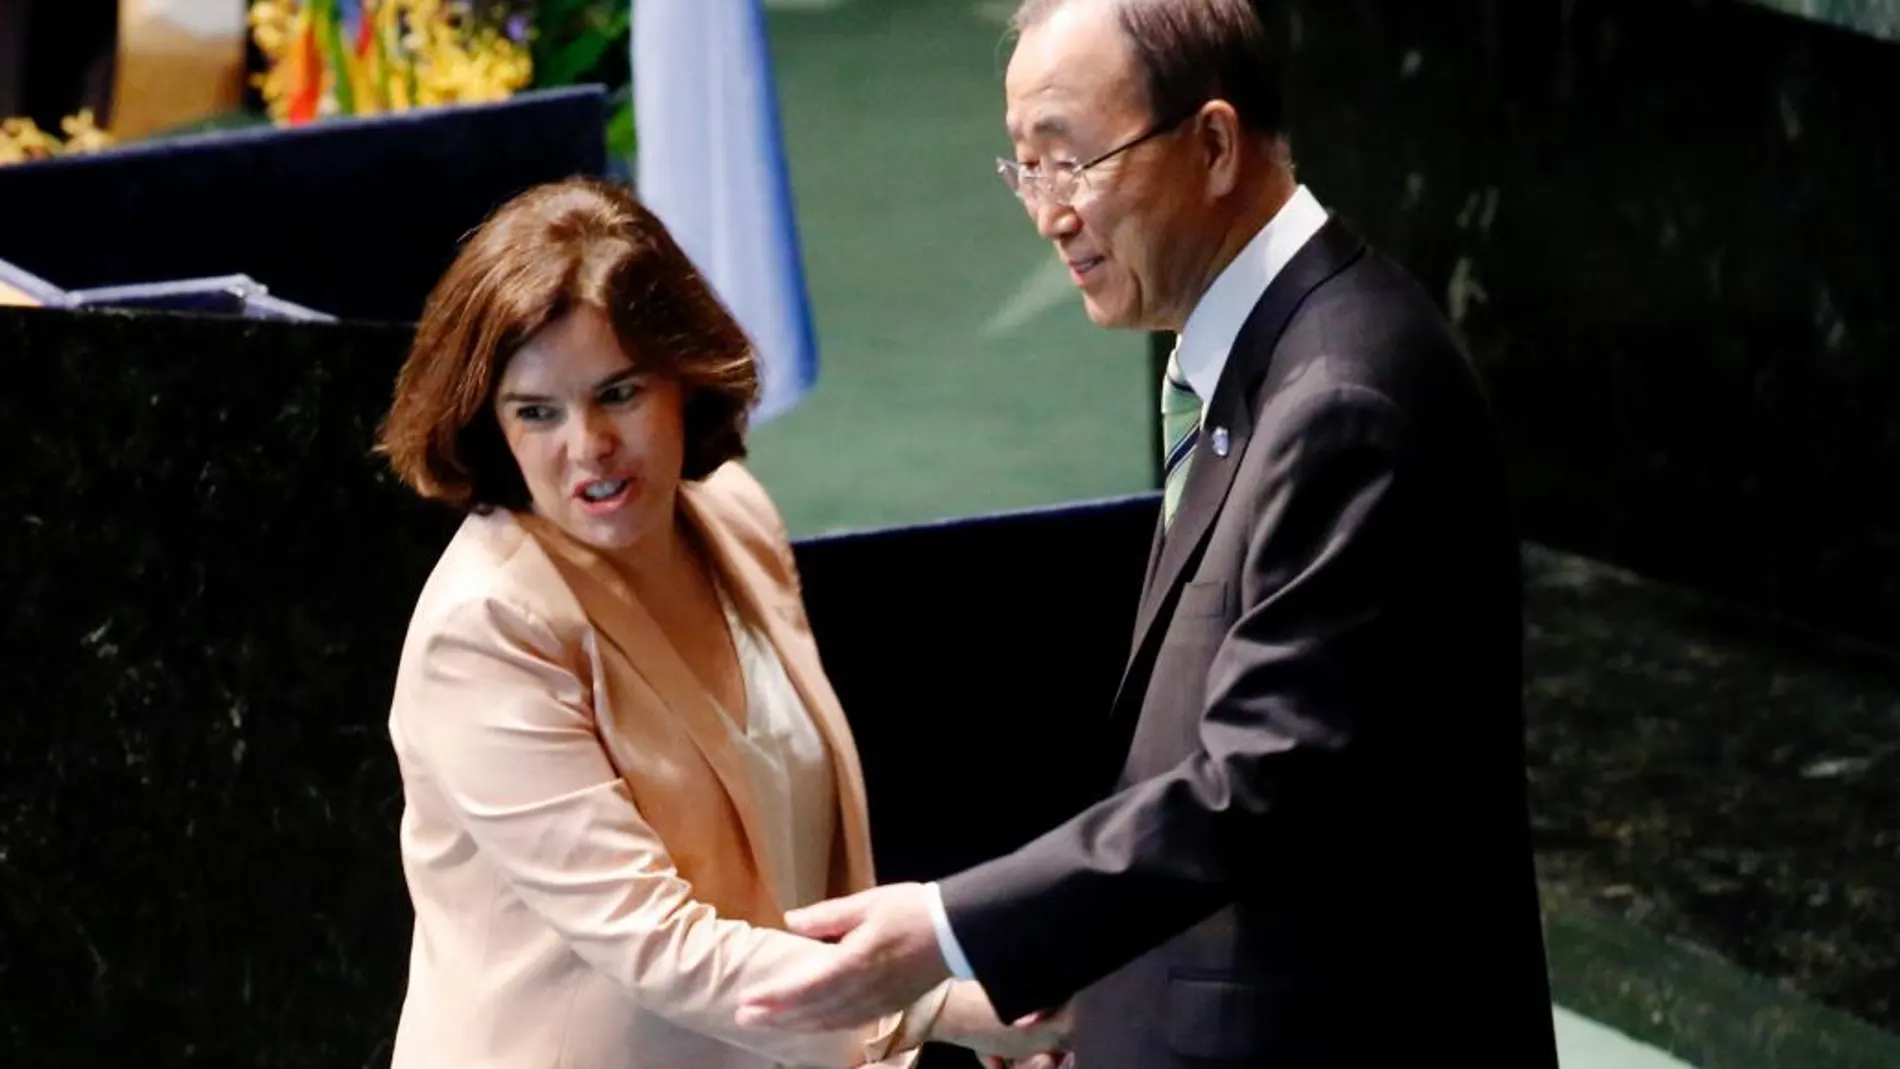 La vicepresidenta del Gobierno en funciones, Soraya Sáenz de Santamaría, saluda al secretario general de Naciones Unidas, Ban Ki-moon, tras la firma del Acuerdo de París